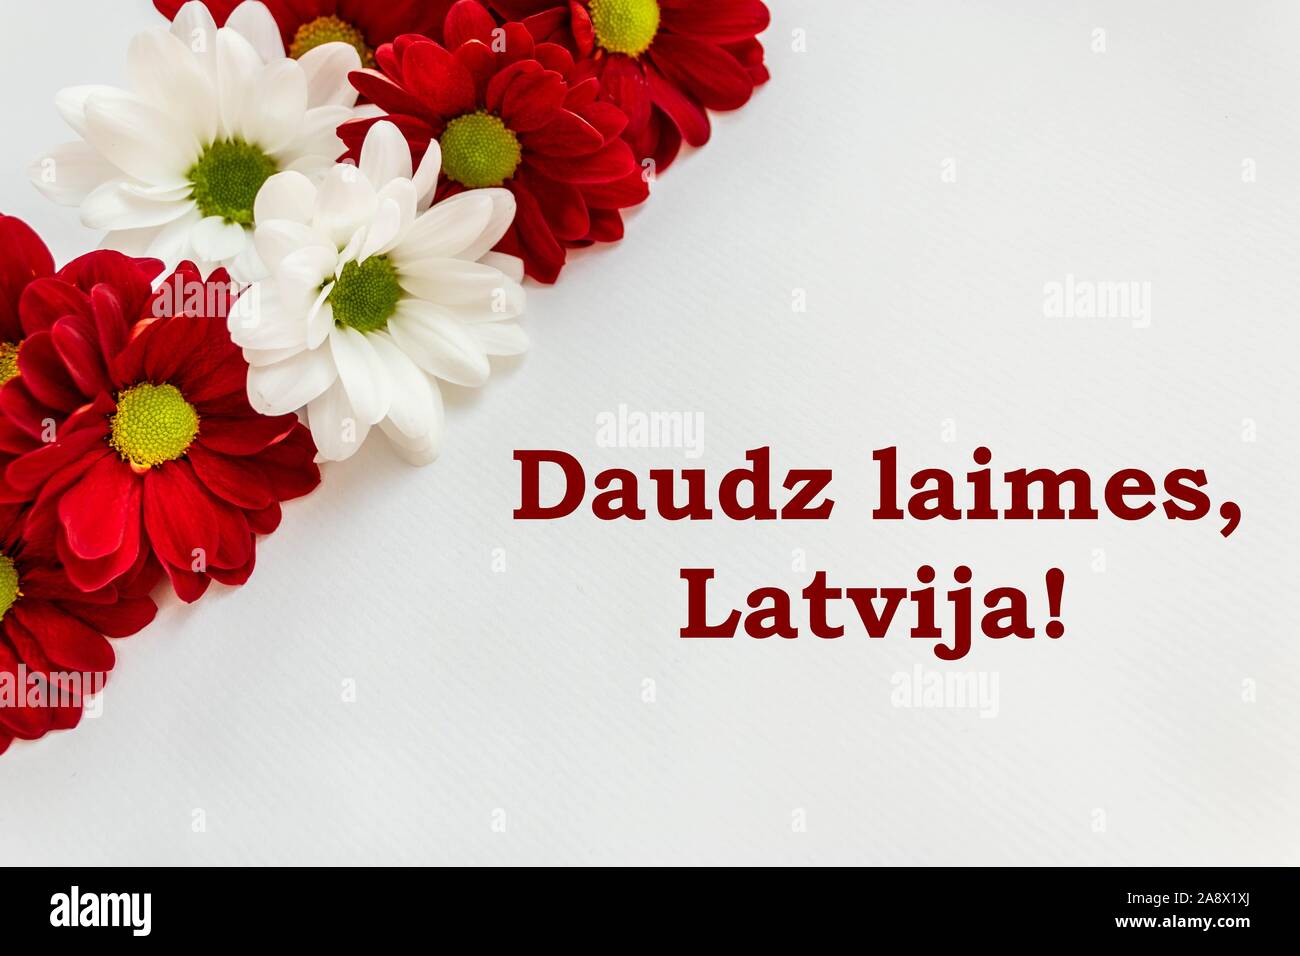 Rote und Weiße Chrysantheme Blumen in den Farben der Lettischen Flagge auf weißem Hintergrund mit Glückwunschschreiben' großes Glück, Lettland!" auf der rechten Seite Stockfoto